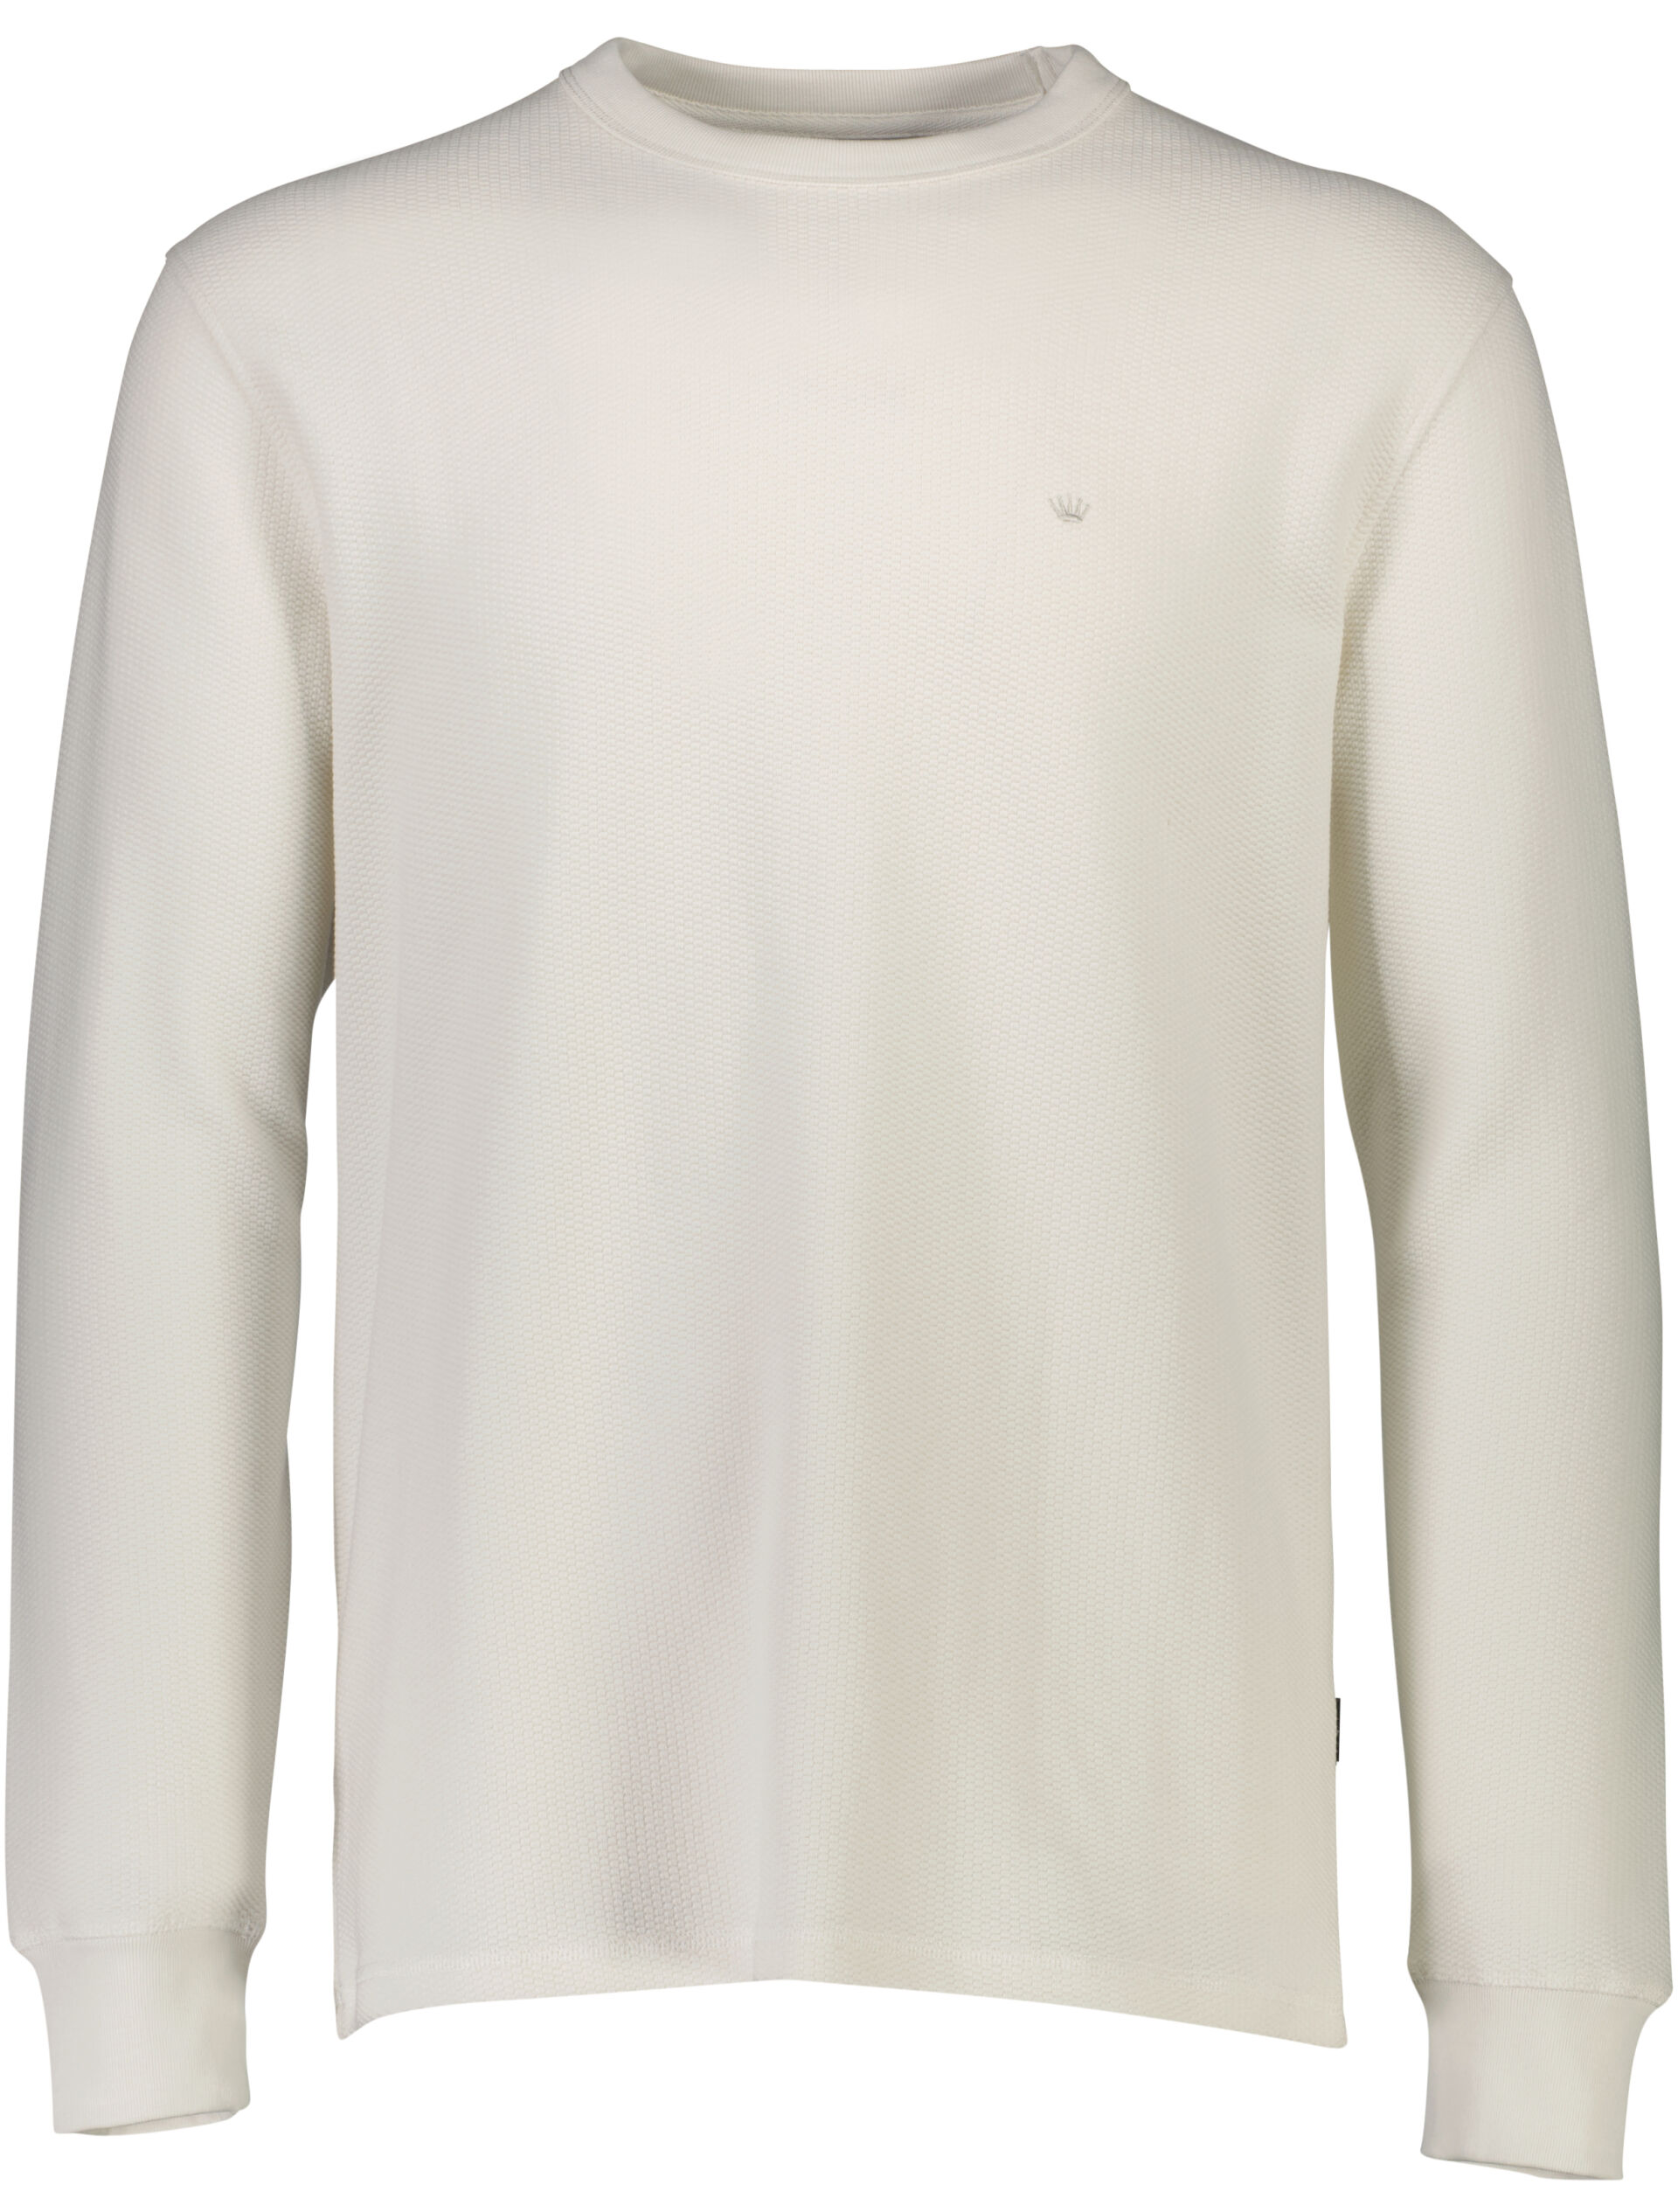 Junk de Luxe  Sweatshirt Hvid 60-702019